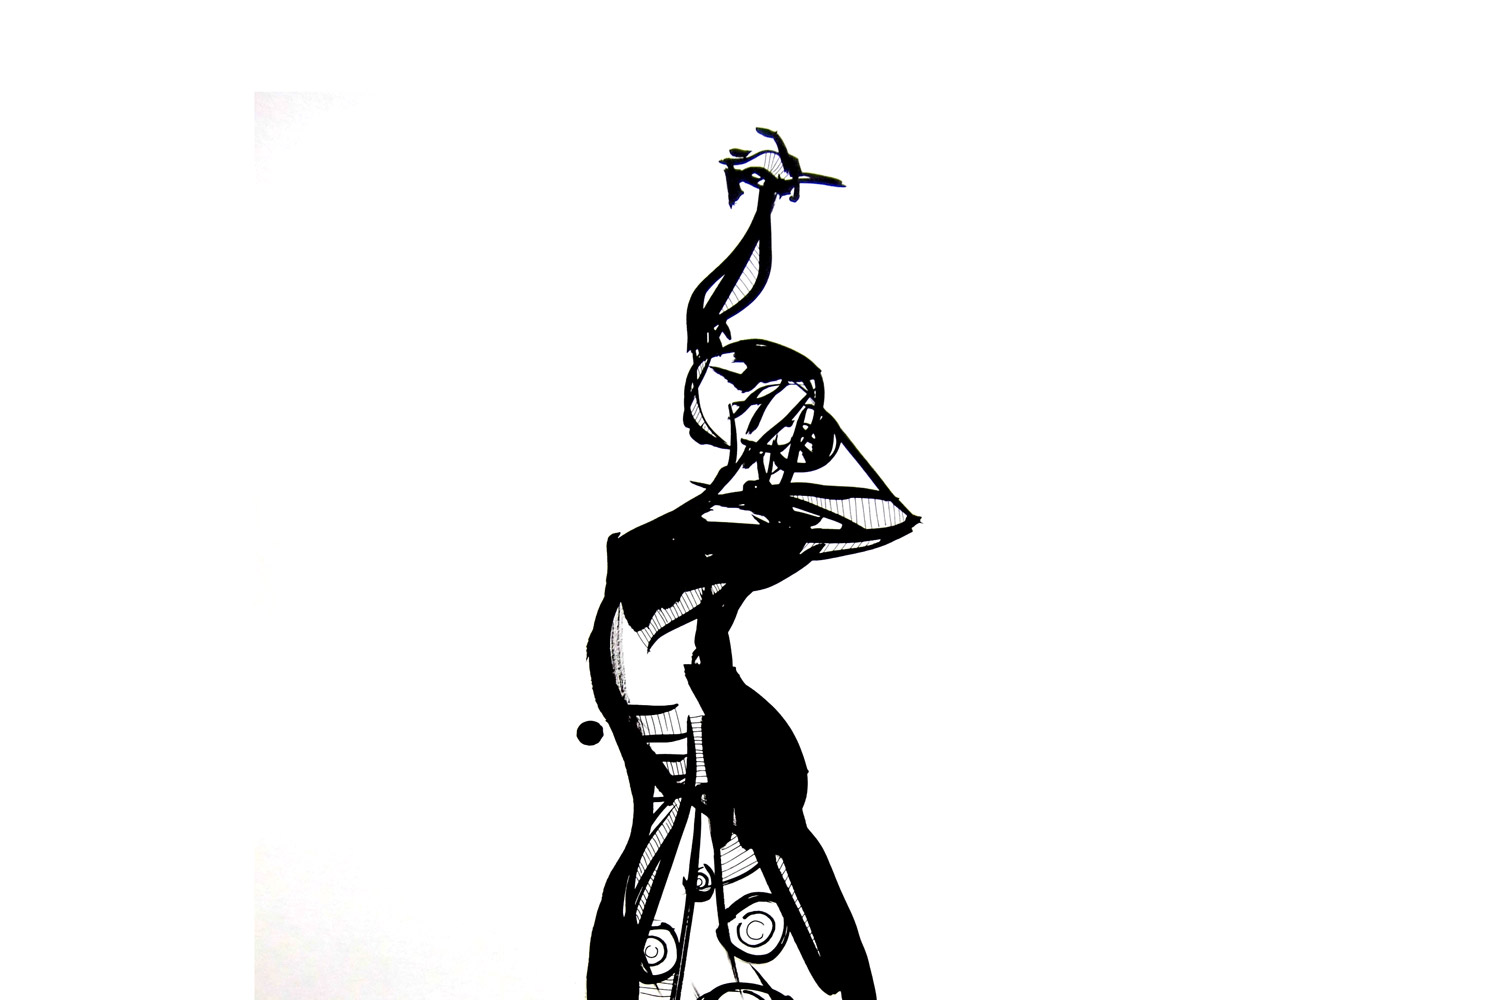 El flamenco con tinta china